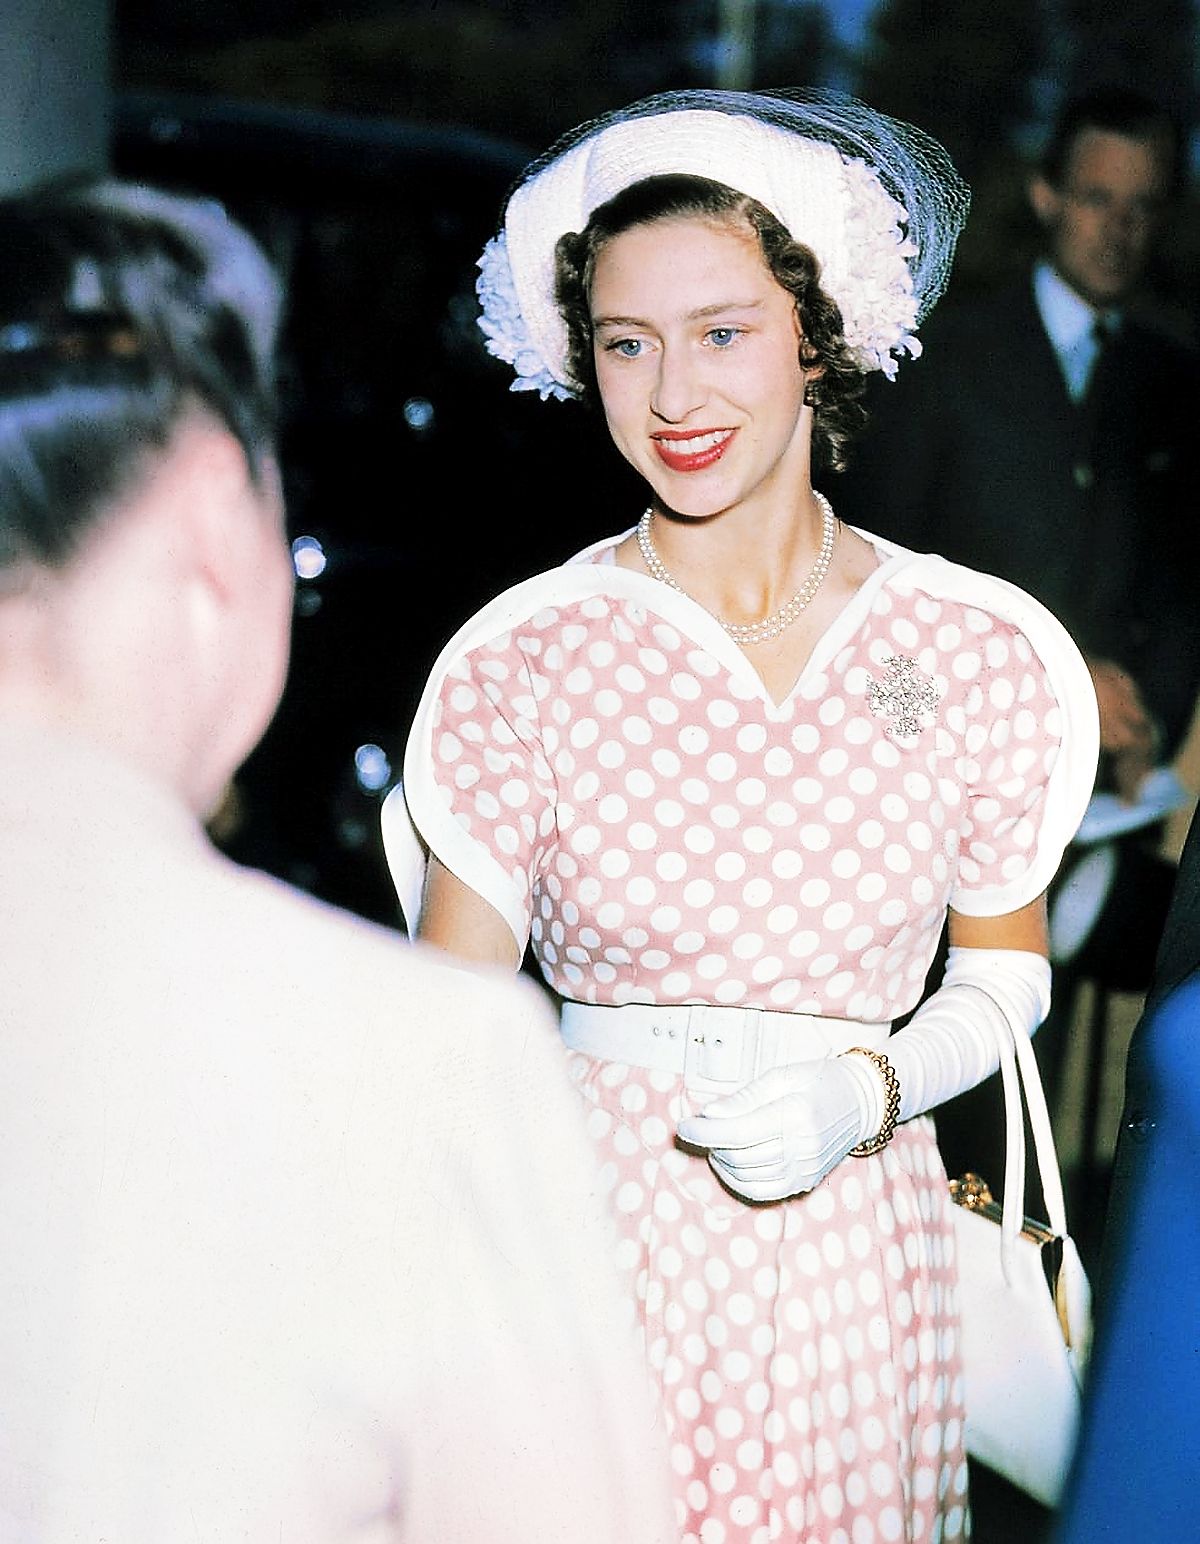 Принцесса провела церемонию повторного открытия Женского учебного колледжа для учителей начальной школы в Эйвери-Хилл после реконструкции, Этам, 5 августа 1949 г.